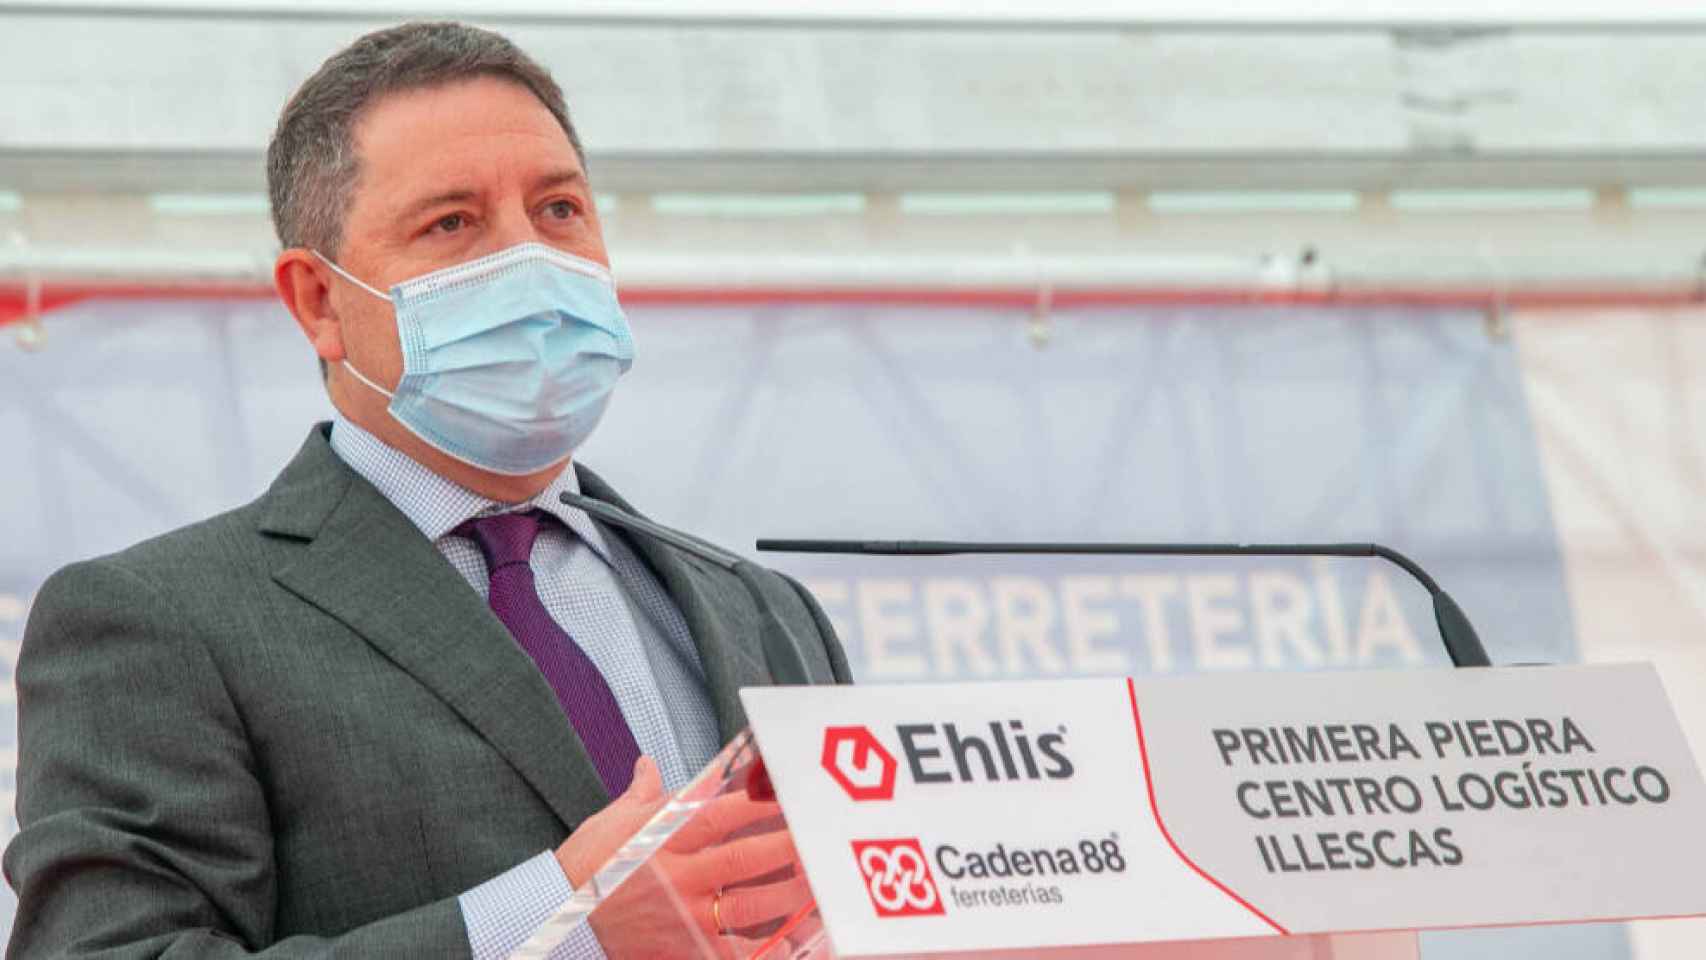 El presidente de Castilla-La Mancha, Emiliano García-Page, se ha desplazado este miércoles a Illescas (Toledo) para poner la primera piedra de la empresa Ehlis